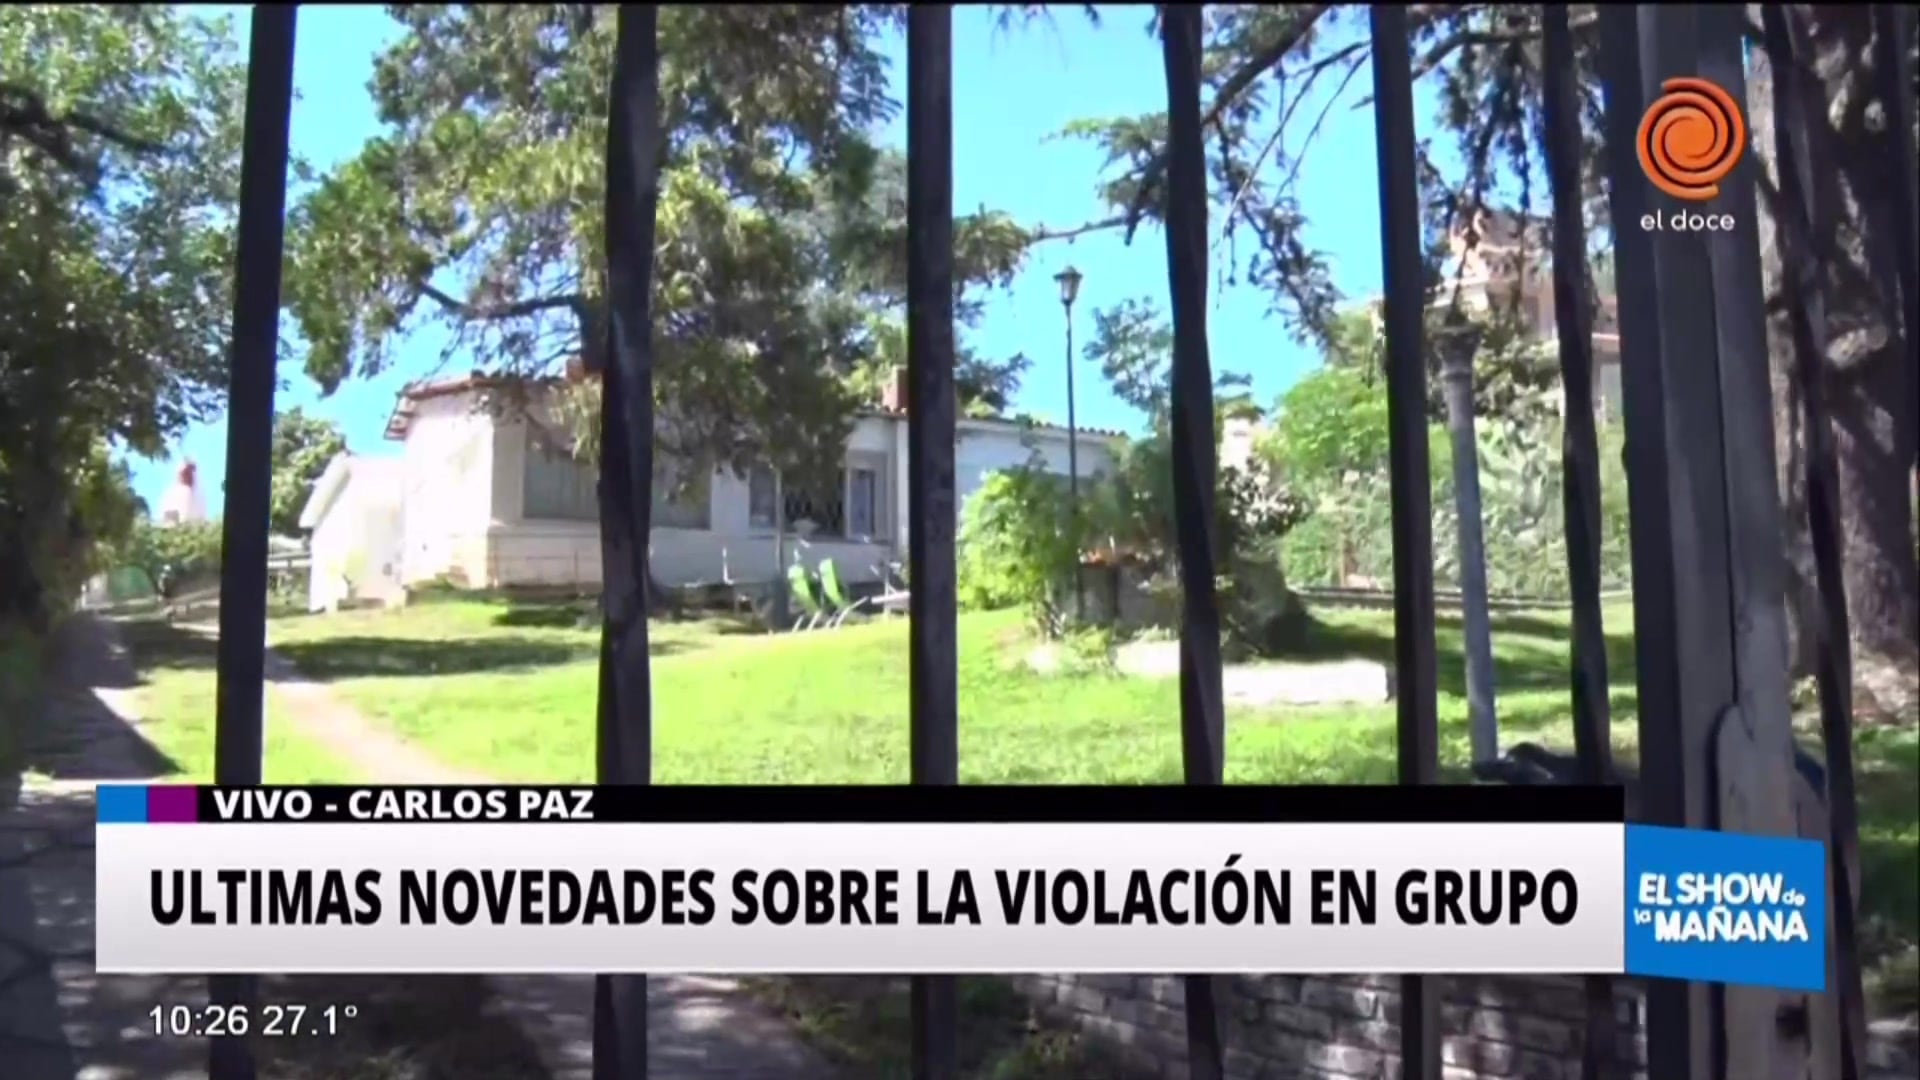 Carlos Paz: La casa de la violación en manada ya está alquilada